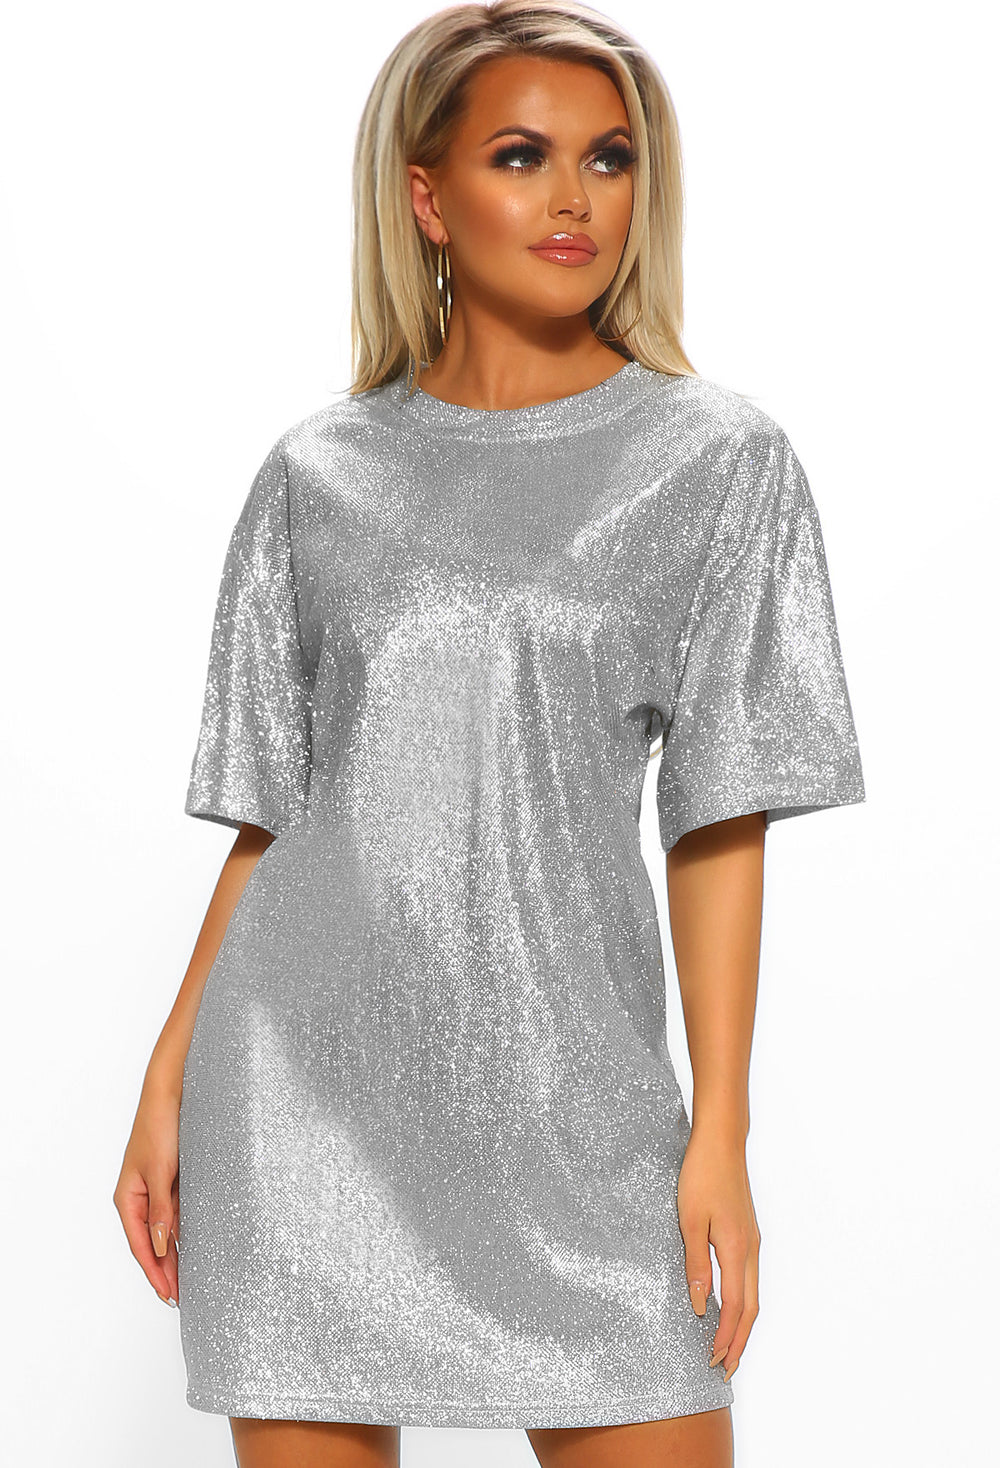 silver t shirt dress